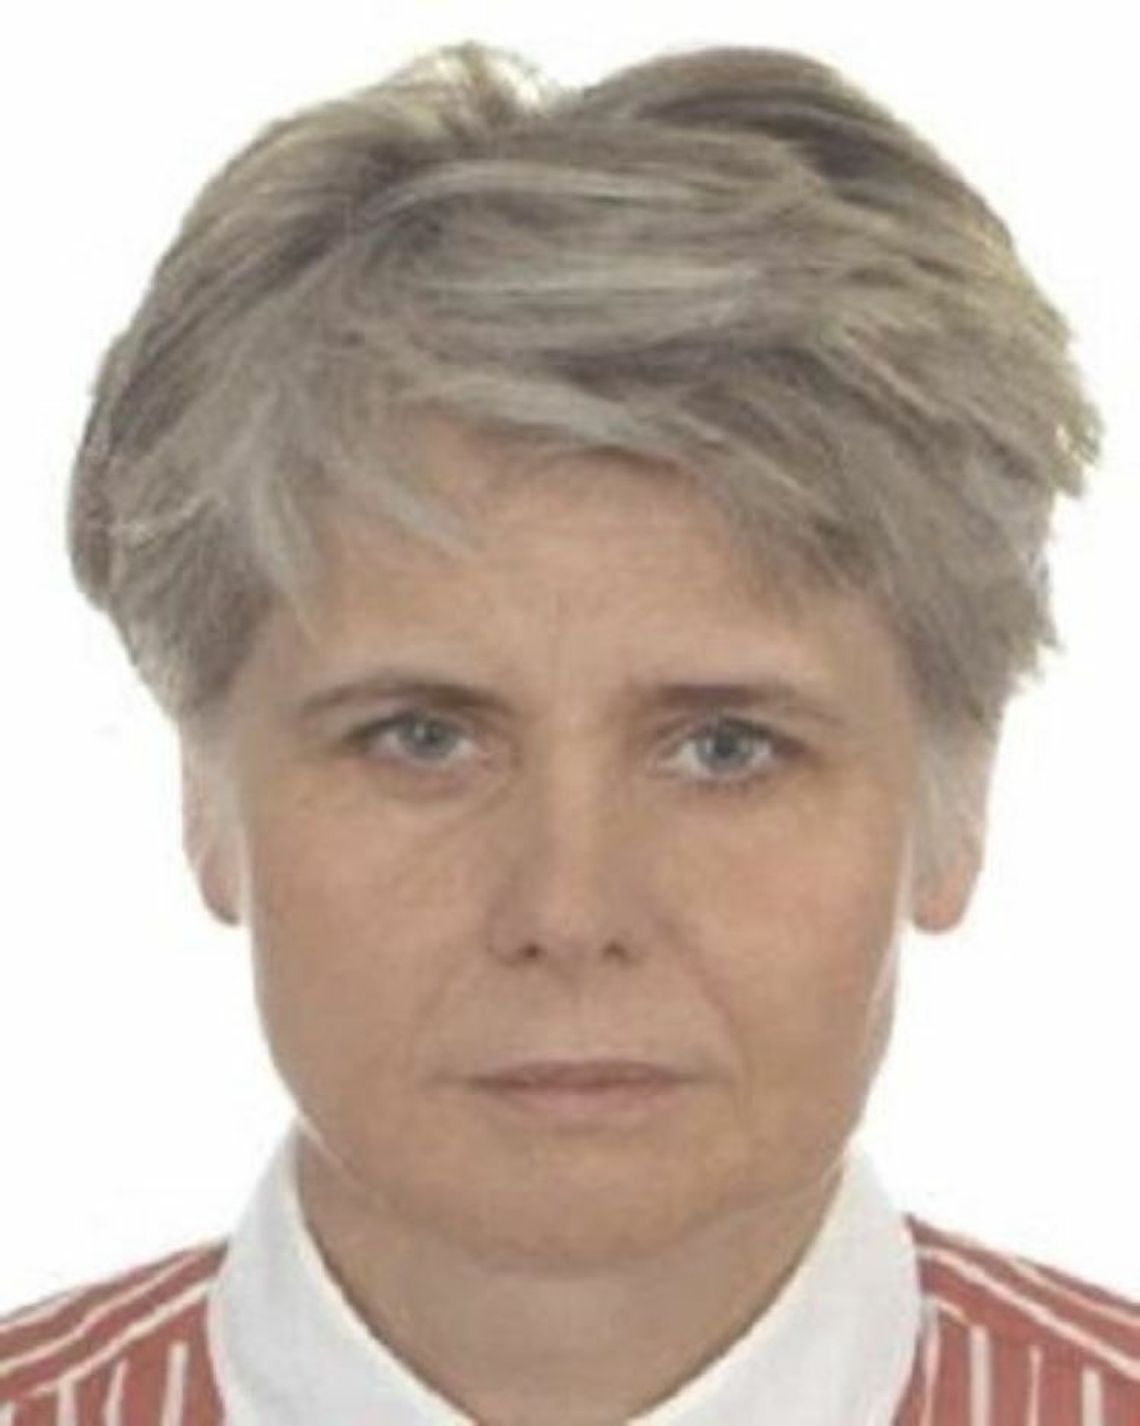 Szczęśliwy finał poszukiwań. 58-latka odnaleziona na terenie powiatu radziejowskiego